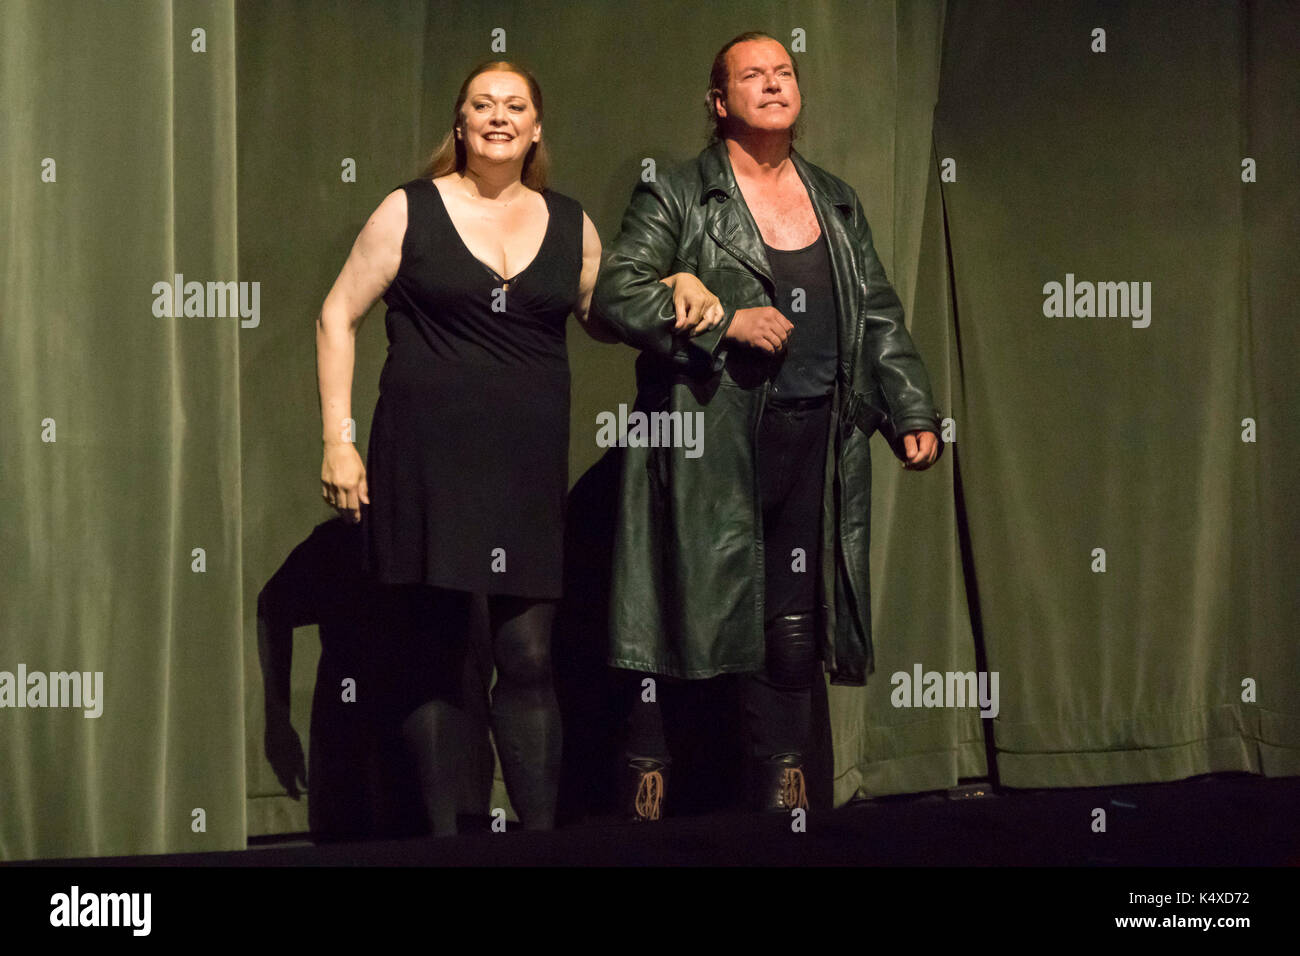 Catherine Foster als Brünnhilde, Stefan Vinke als Siegfried in Curtain Call an Wagners Gotterdammerung, Bayreuth Opera Festival 2017, Bayern, Deutschland Stockfoto